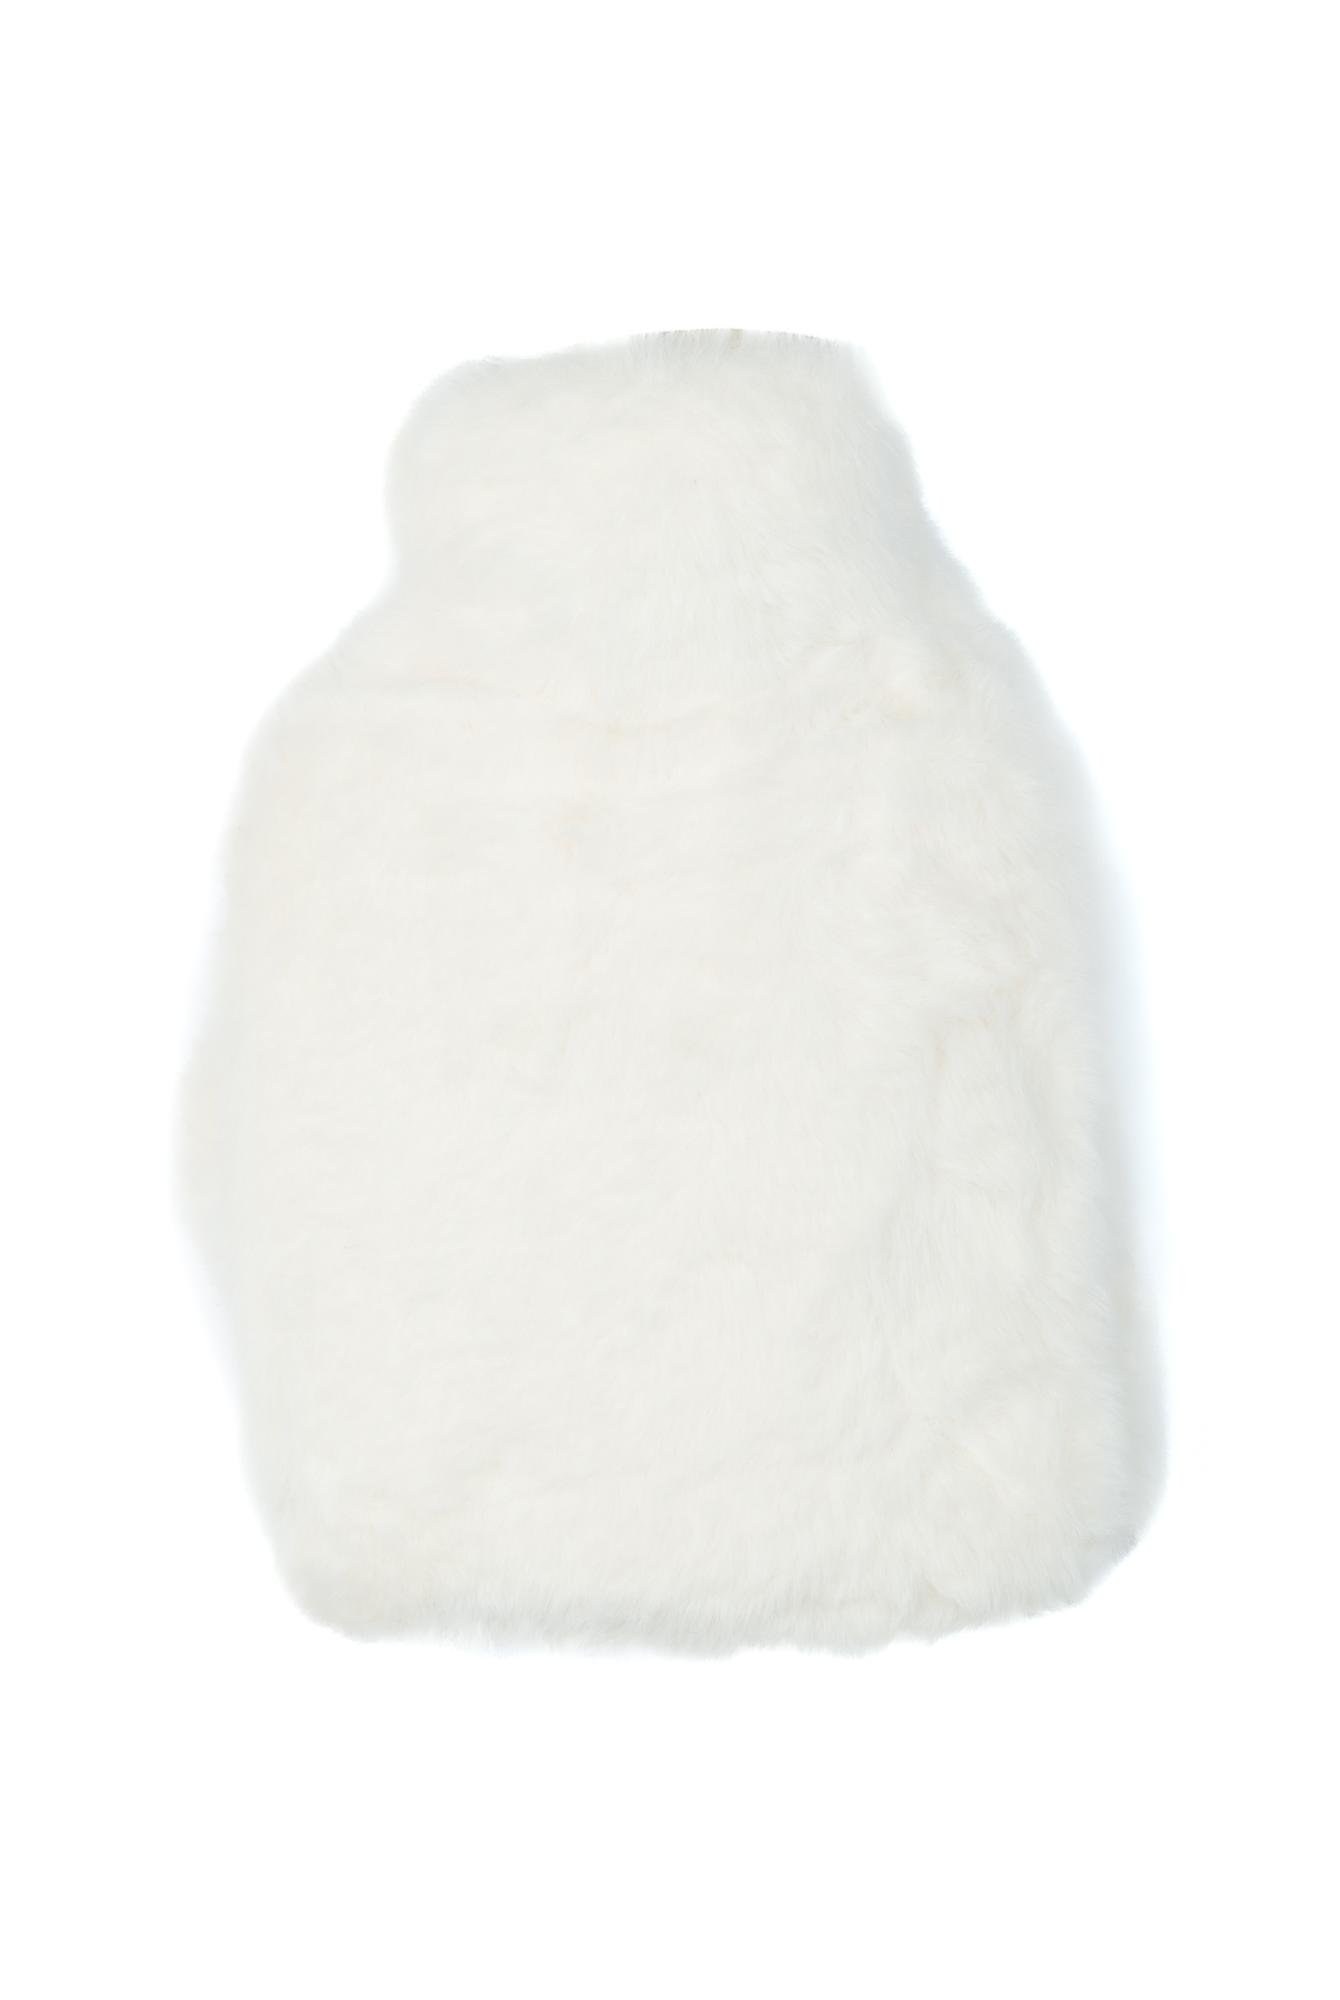  Yoyoso Pelüş Sevimli Kulaklı Tavşan Temalı Desenli Sıcak Su Torbası Termofor Beyaz 800 ml 23 x 17 cm